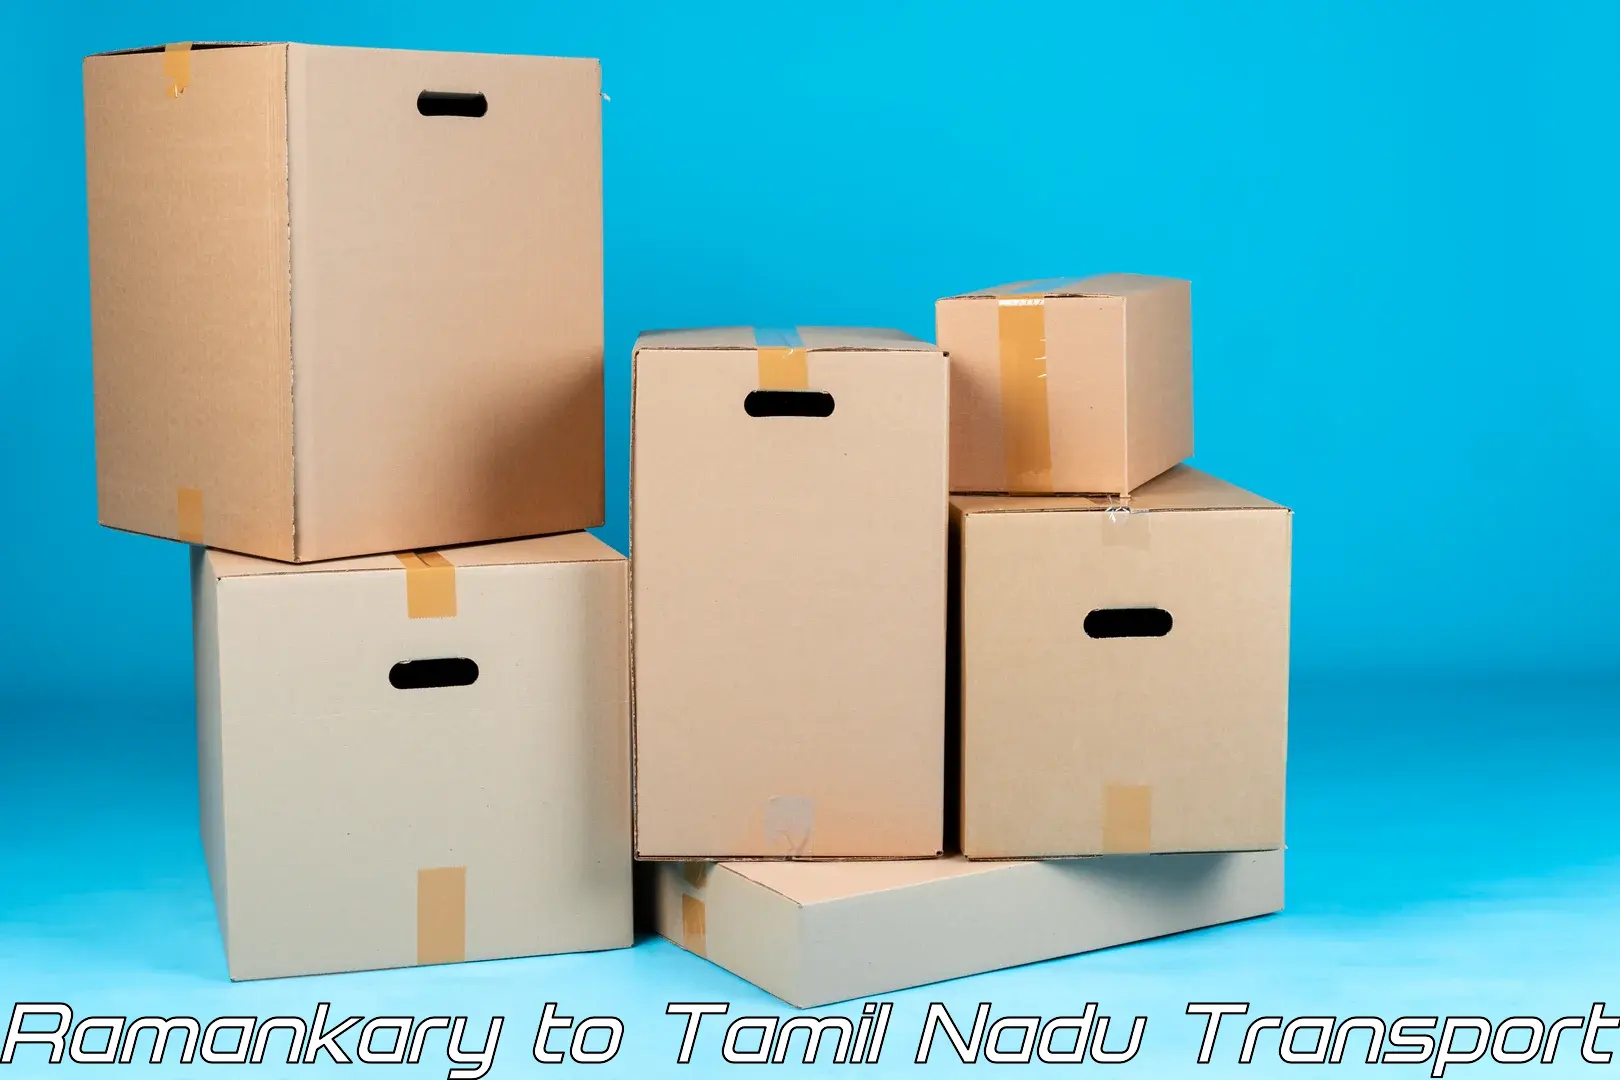 Cargo transport services Ramankary to Avadi